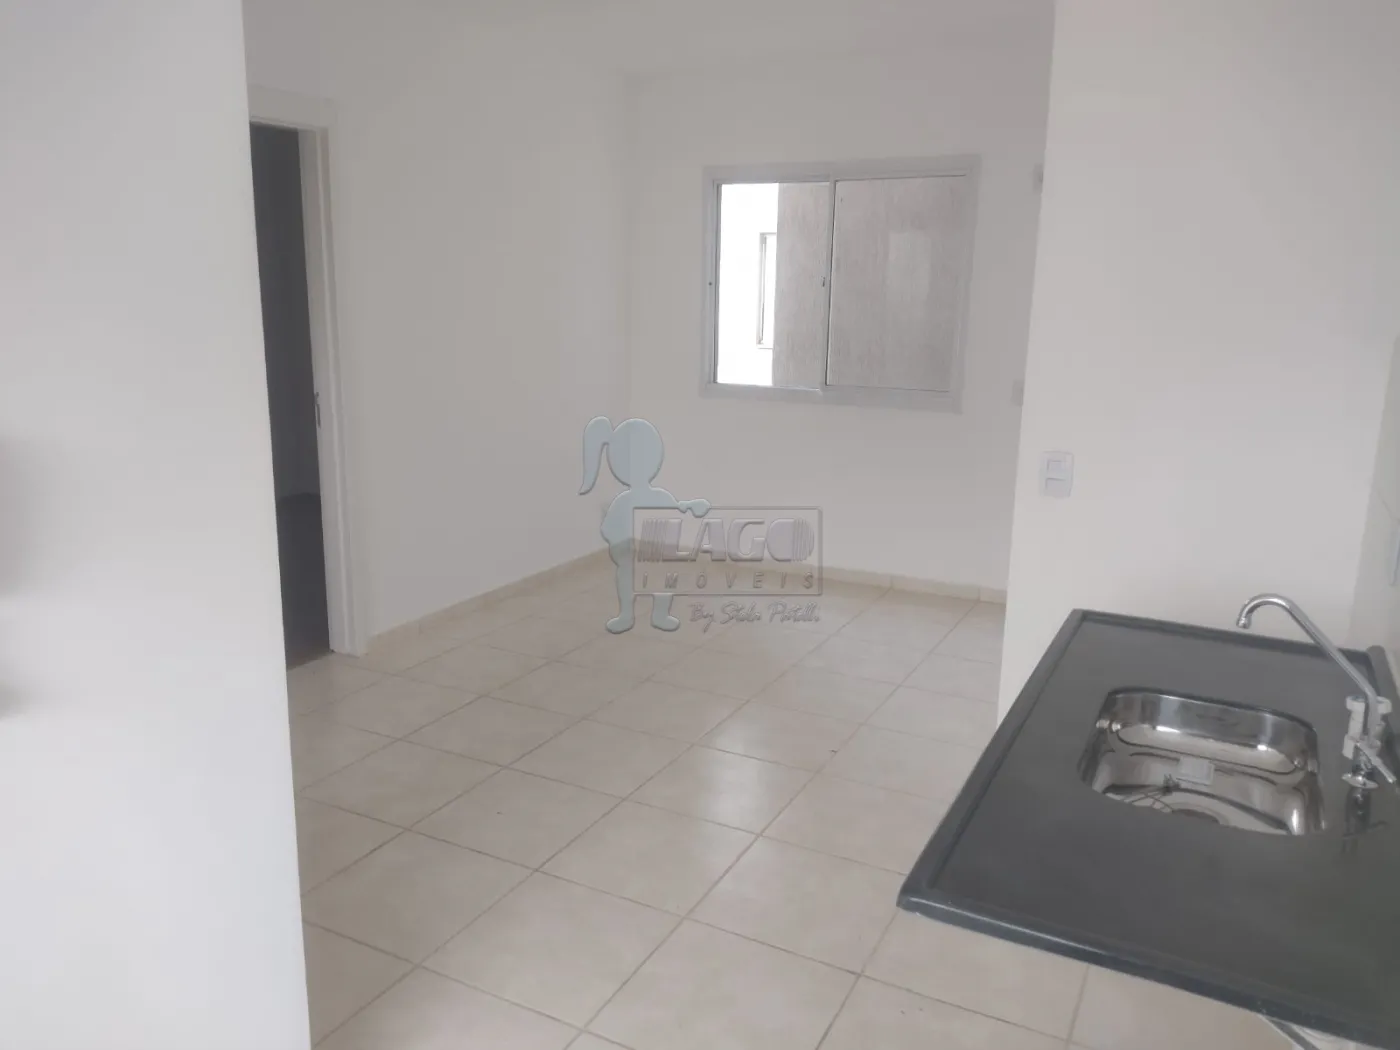 Comprar Apartamento / Padrão em Ribeirão Preto R$ 133.000,00 - Foto 3